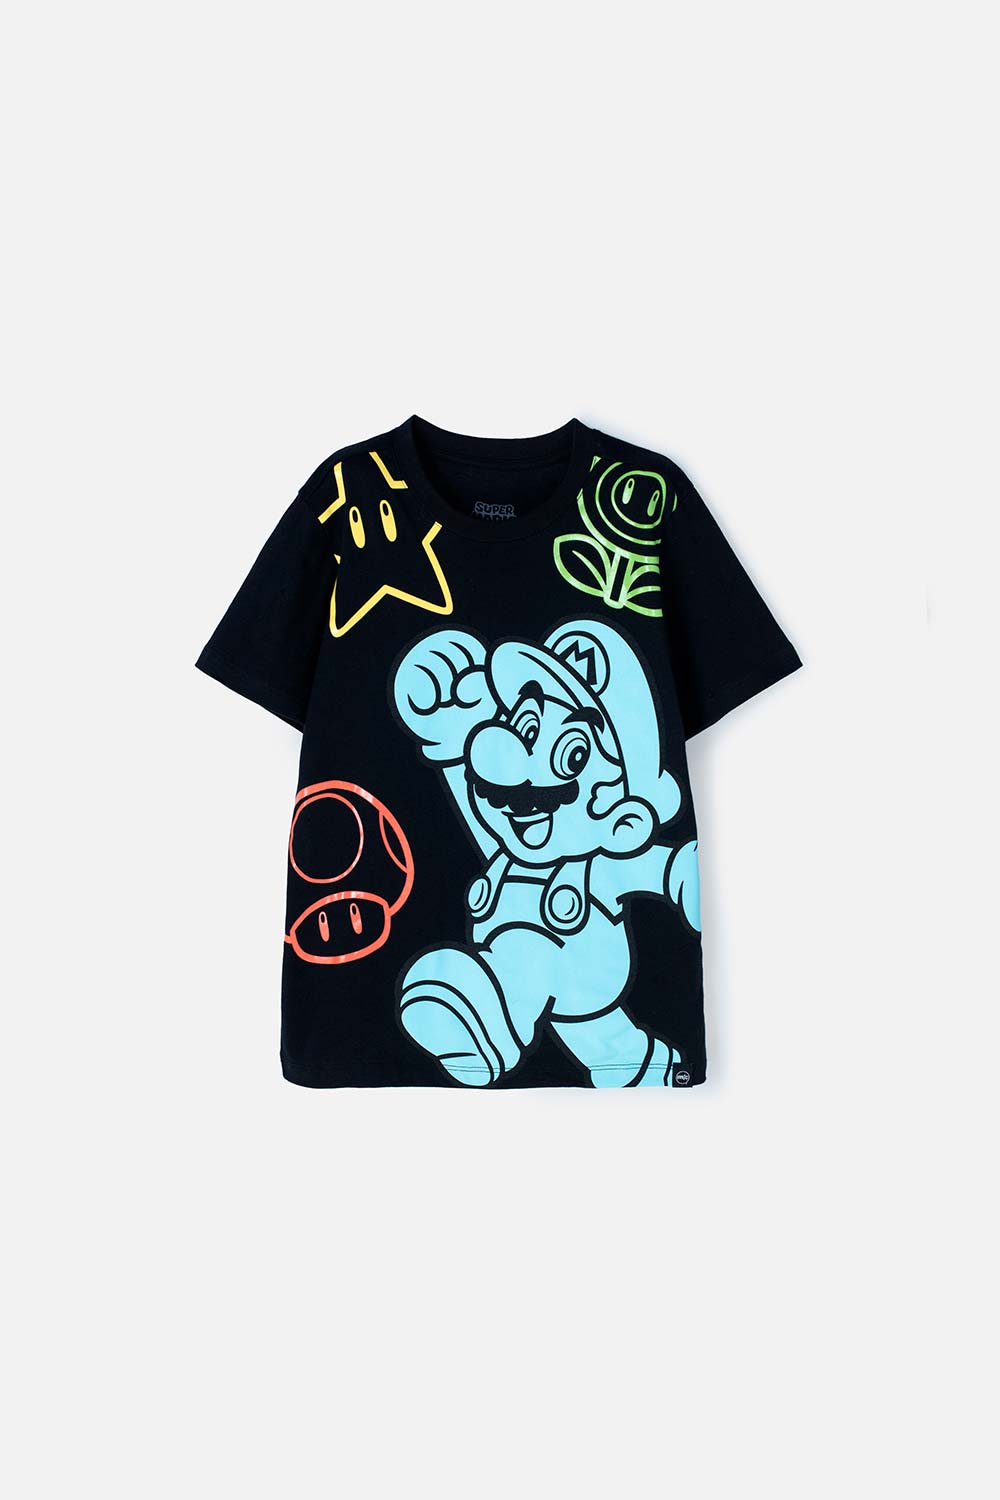 Camiseta de Mario Bros negra  manga corta para niño 4-0